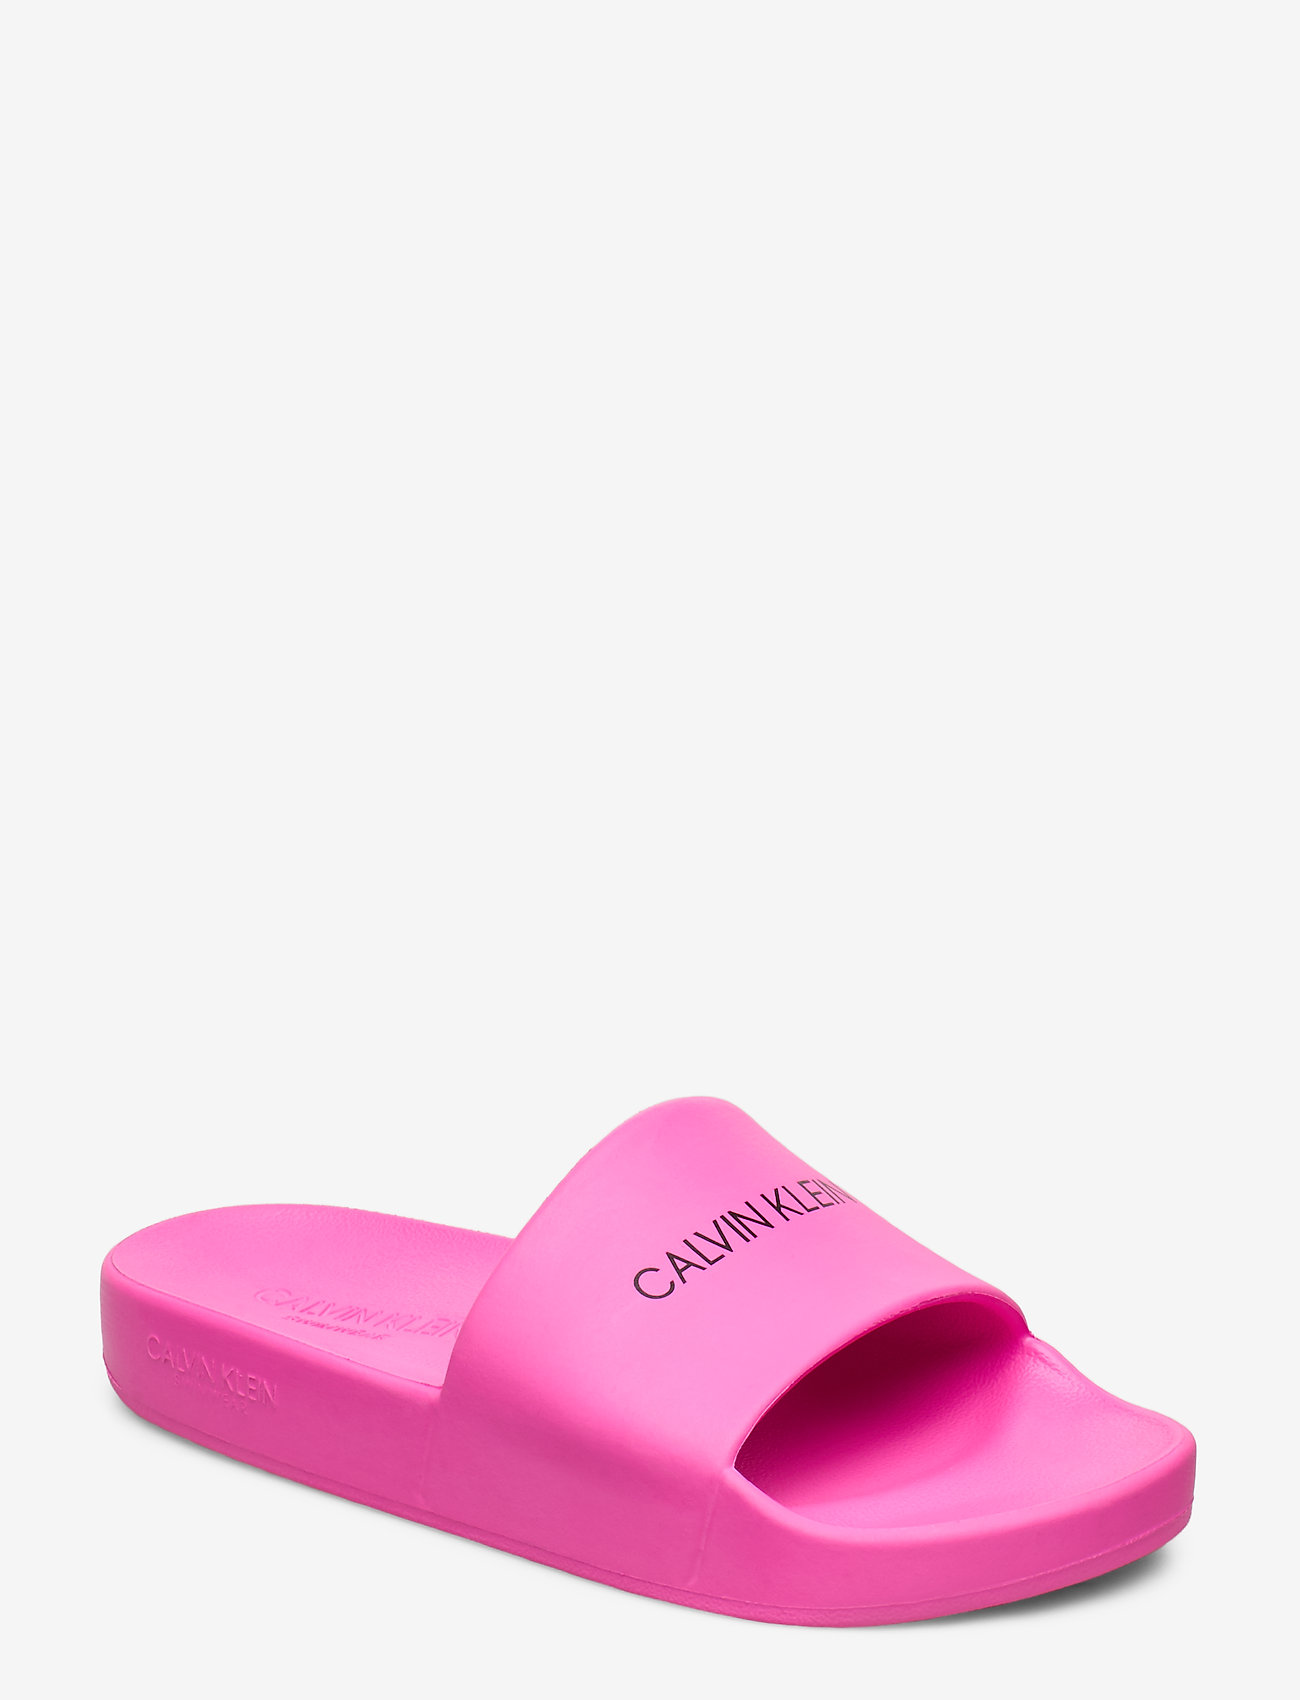 calvin klein slides pink